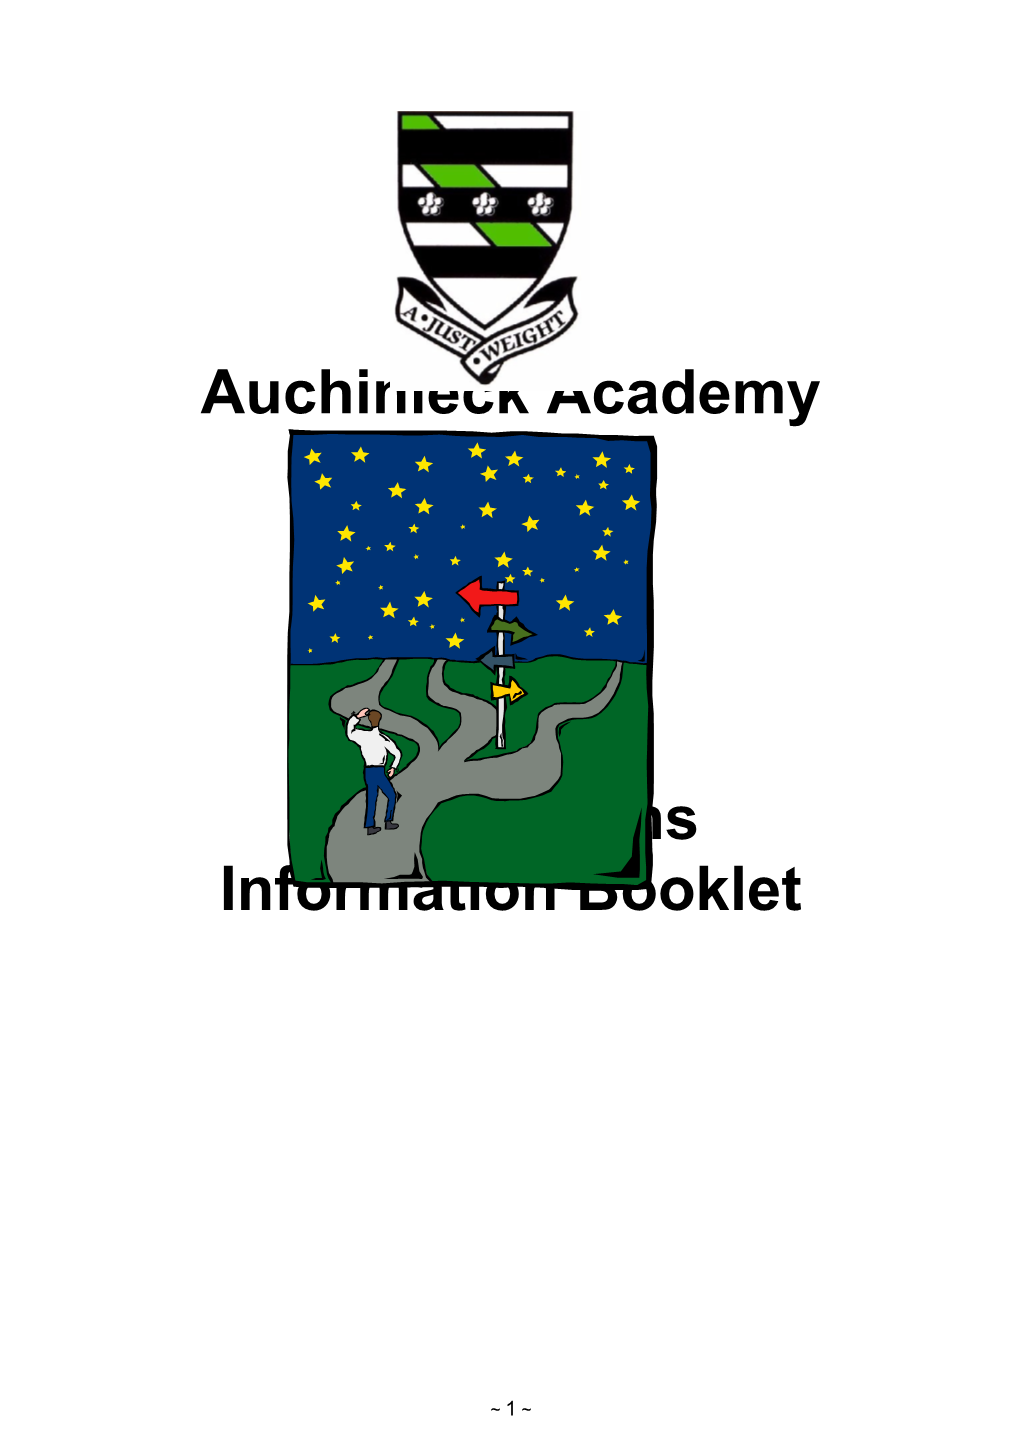 Auchinleck Academy